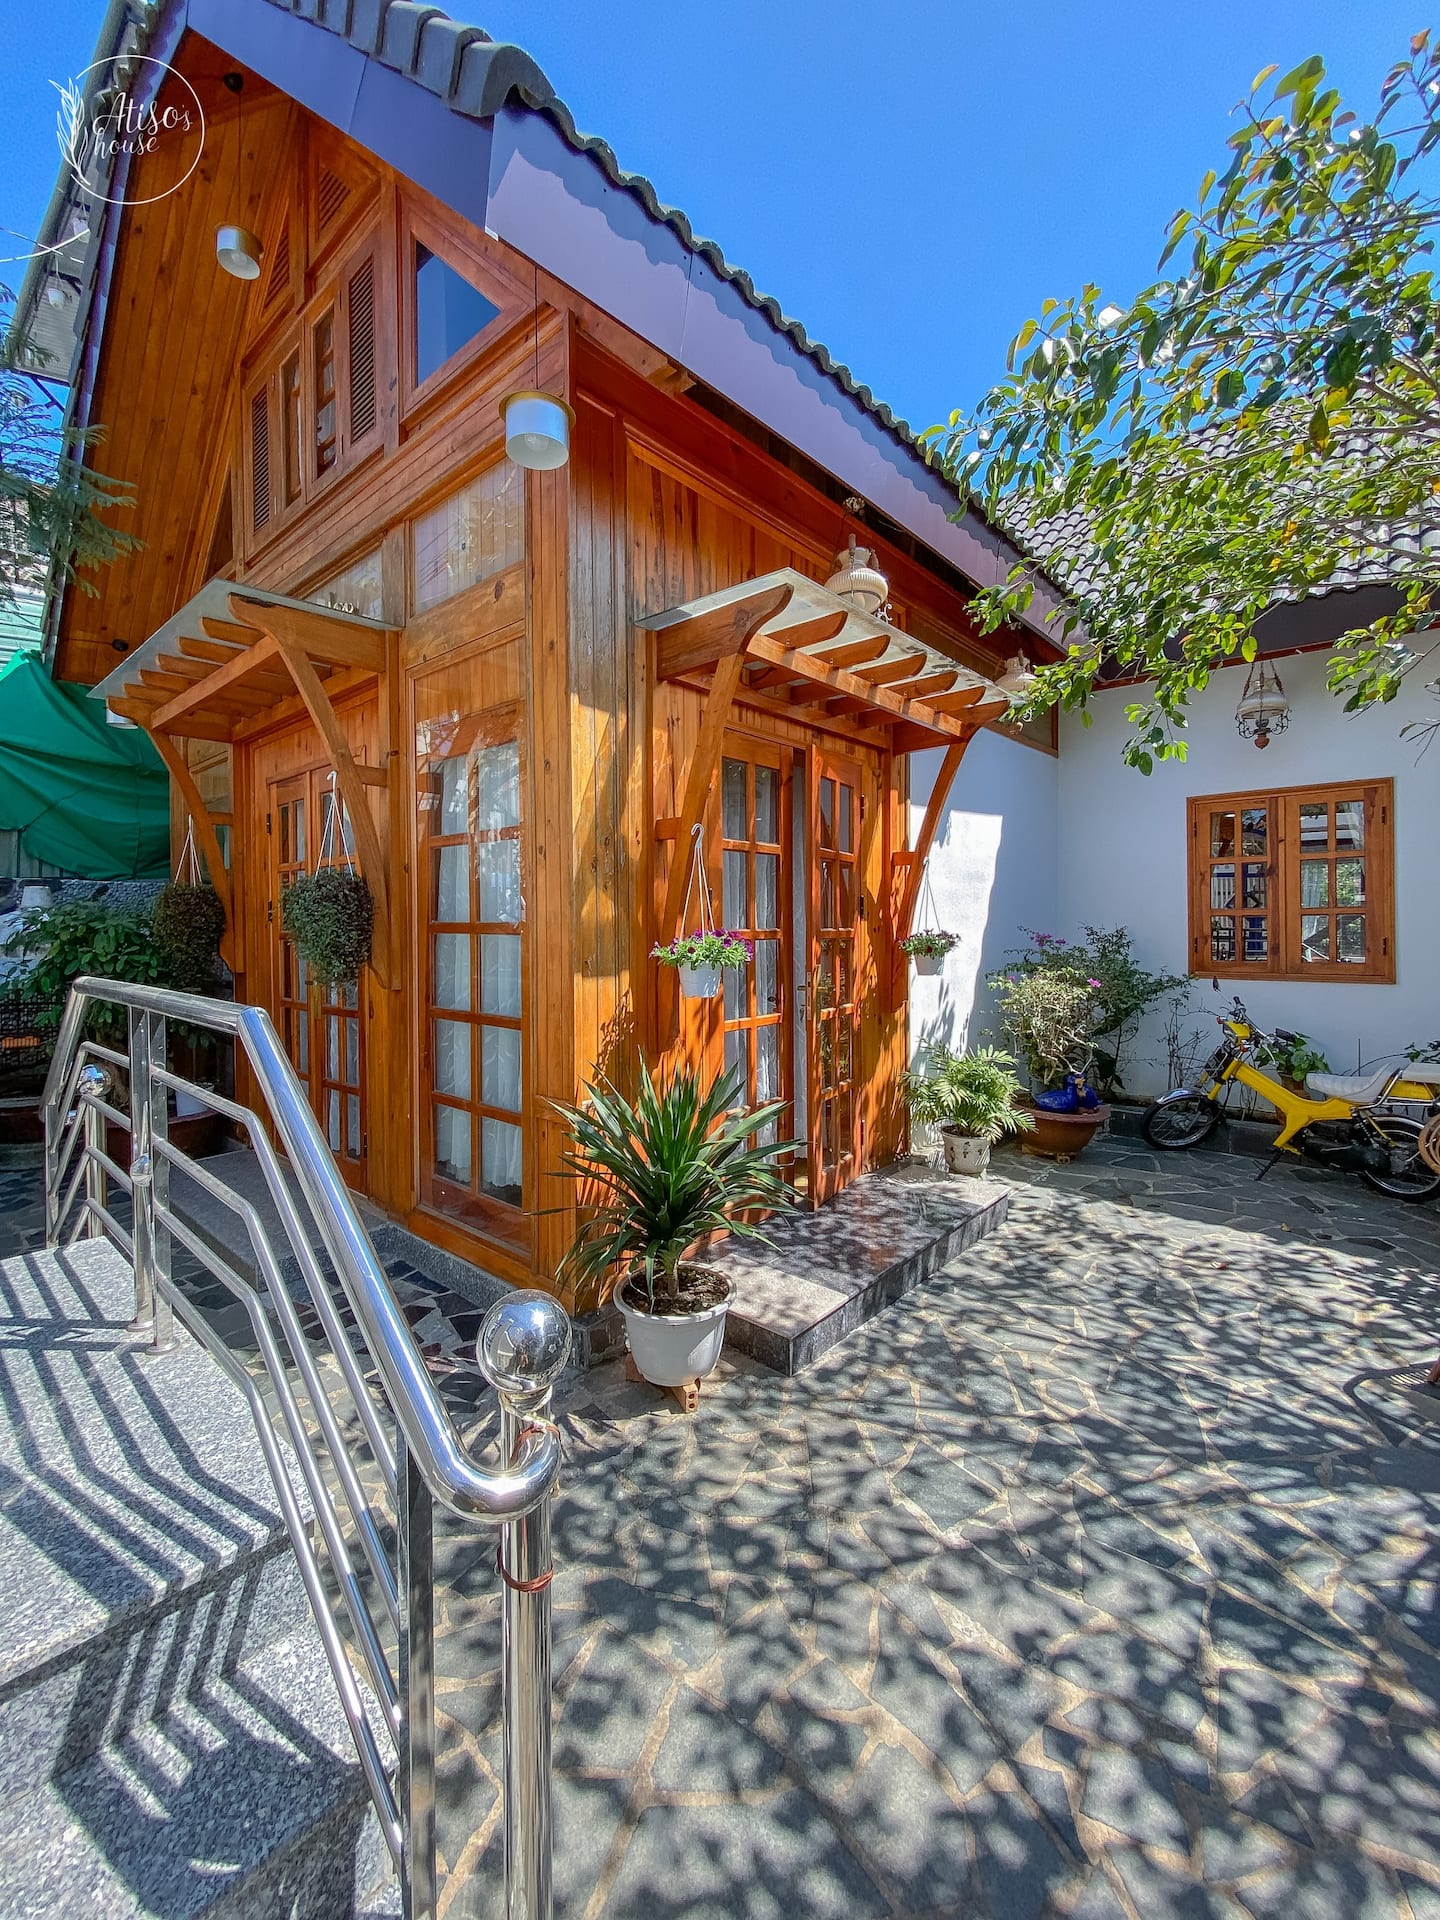 Nhìn Atiso house bạn sẽ thấy căn nhà khá mới mẻ, thiết kế gỗ là chủ yếu với ban ngày có nắng là ...